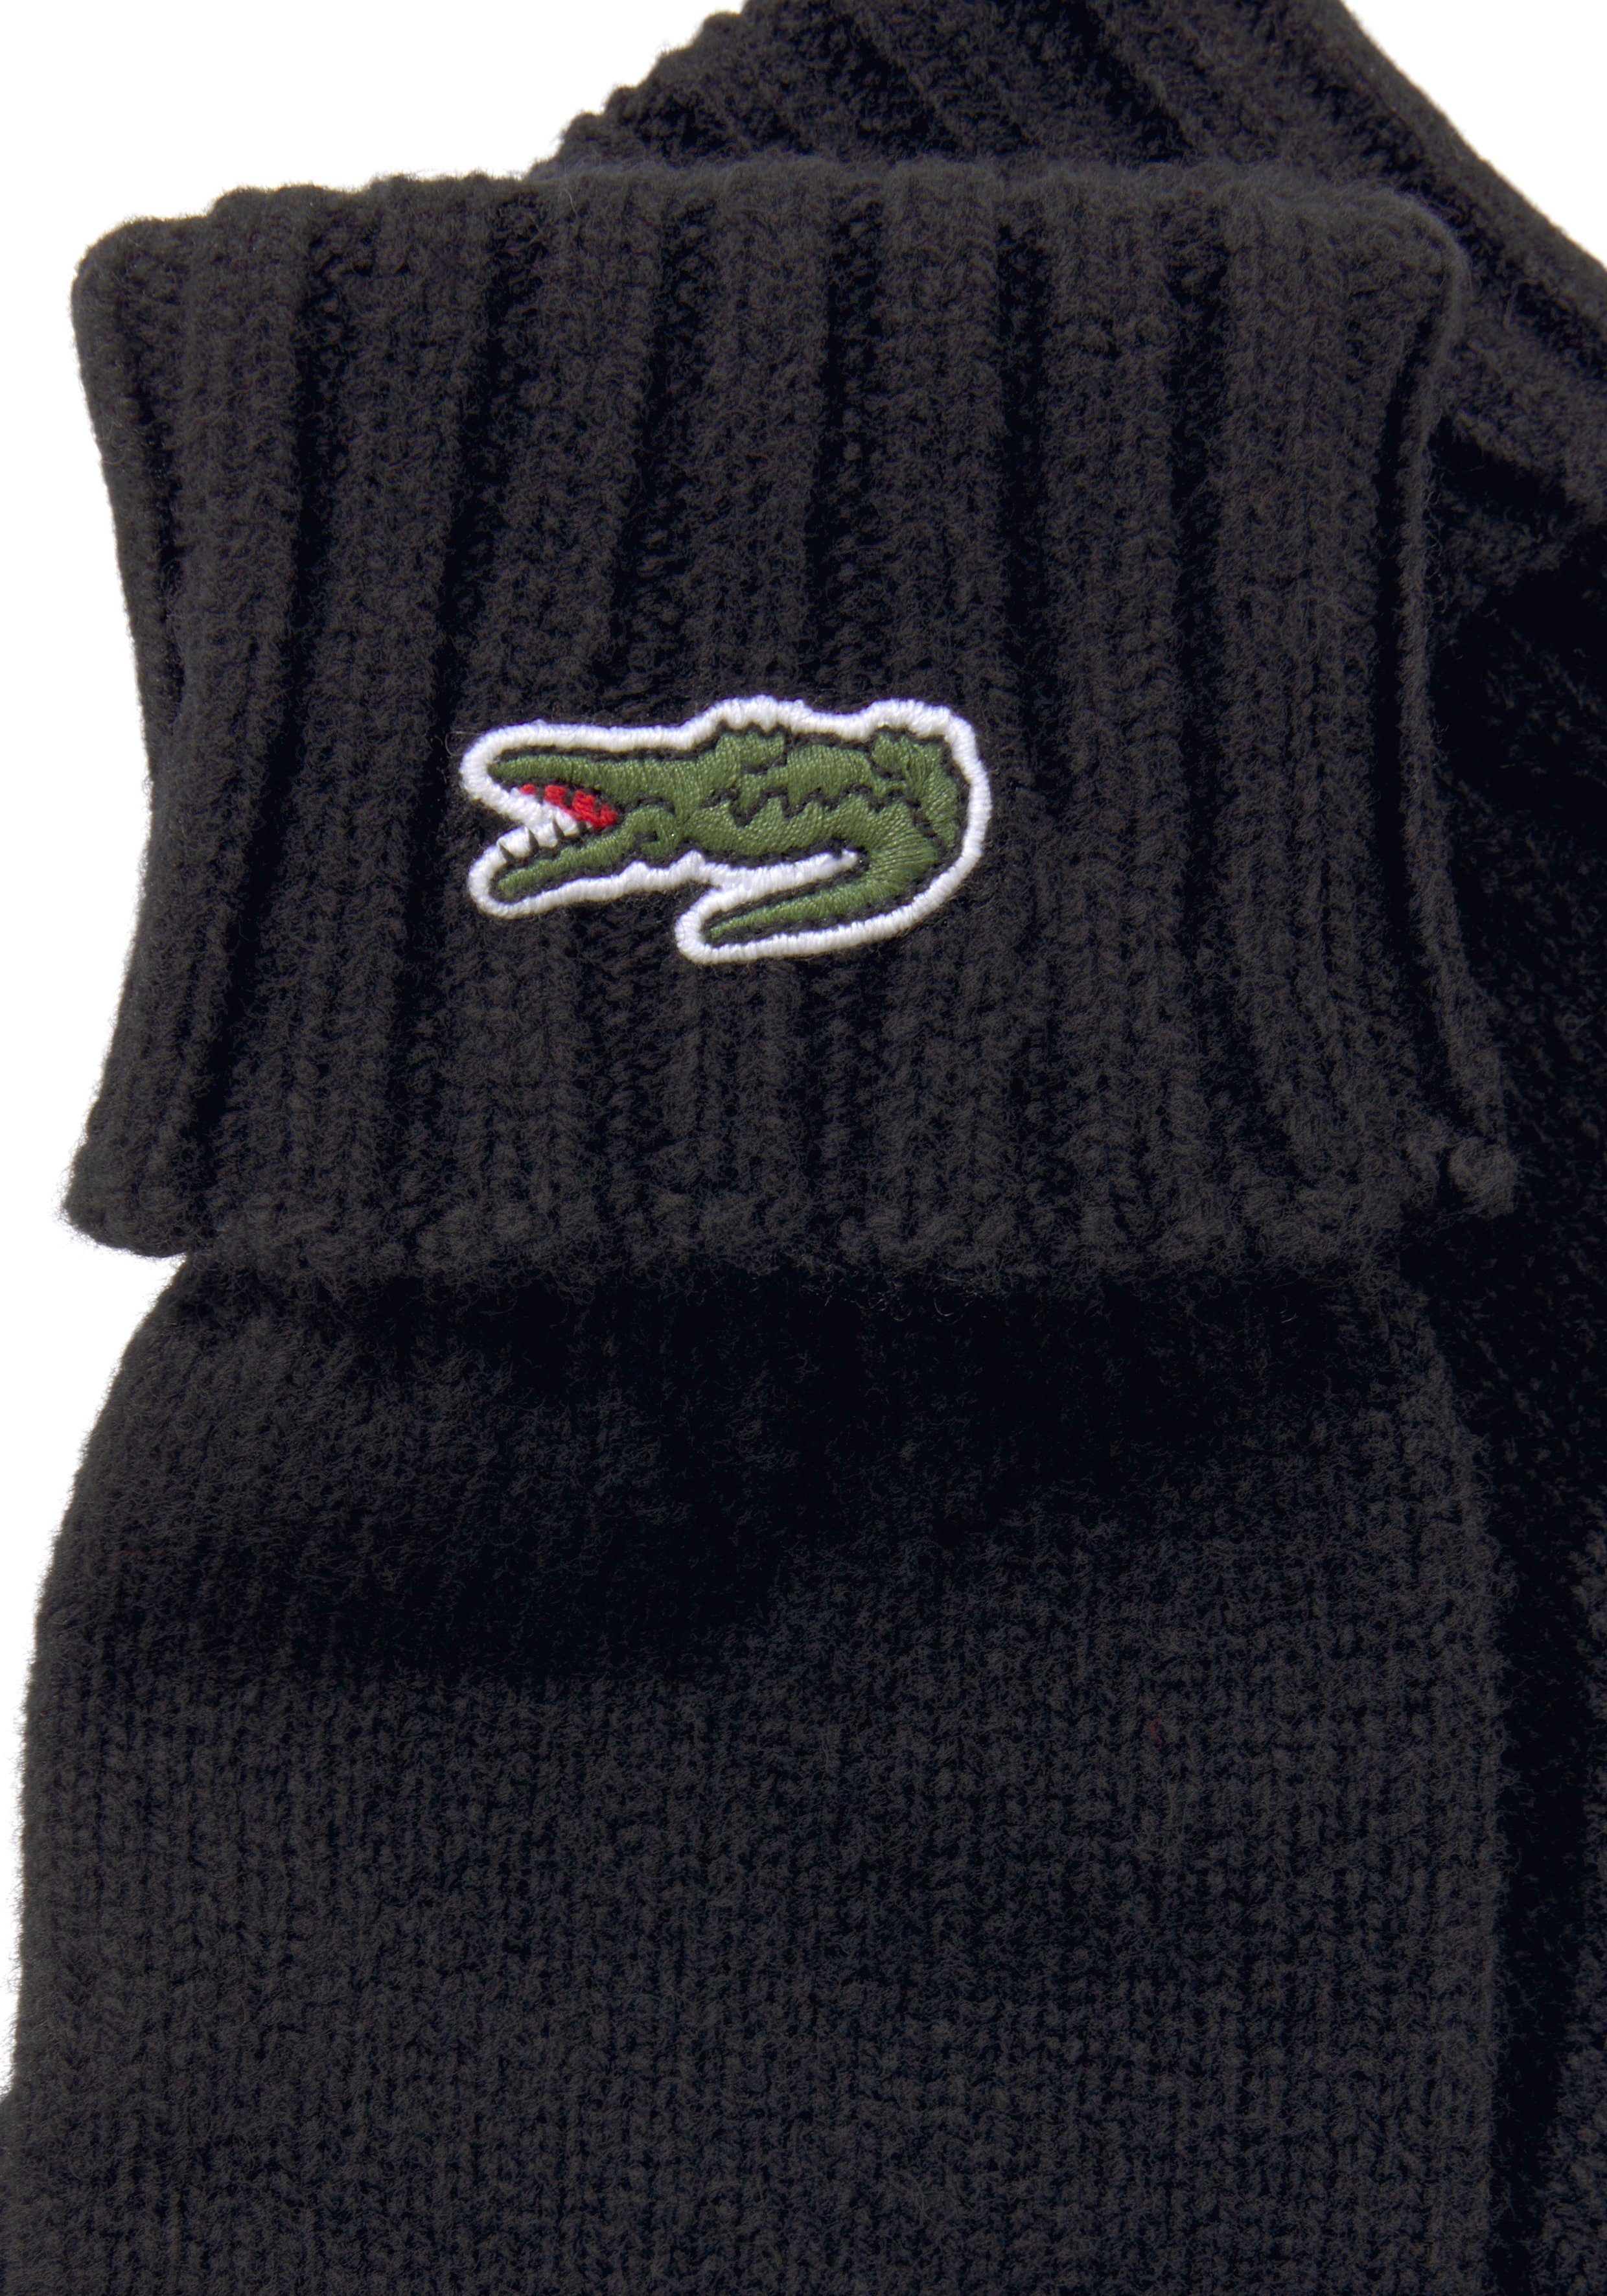 Logo, schwarz mit Lacoste Unisex Gift Strickhandschuhe Premium, Strickhandschuhe Warm Geschenk, Gloves